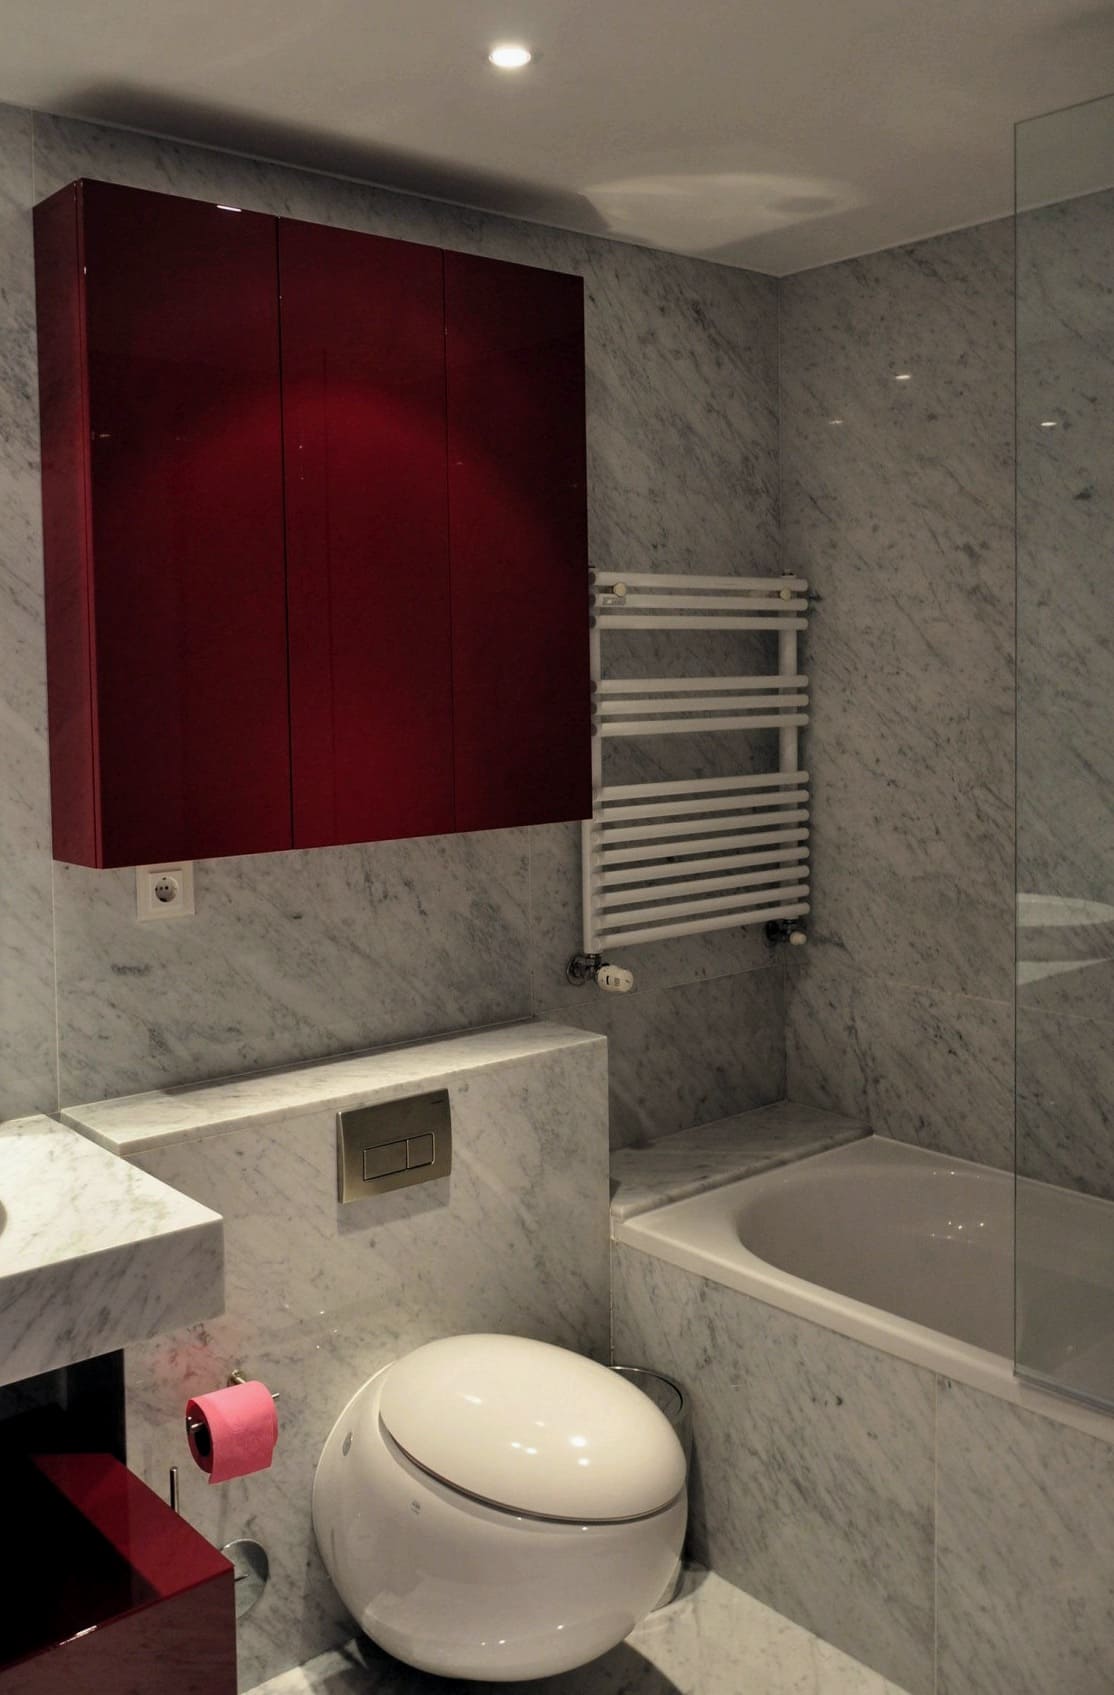 Rdeča kvadratna omarica kot kopalniški dekor